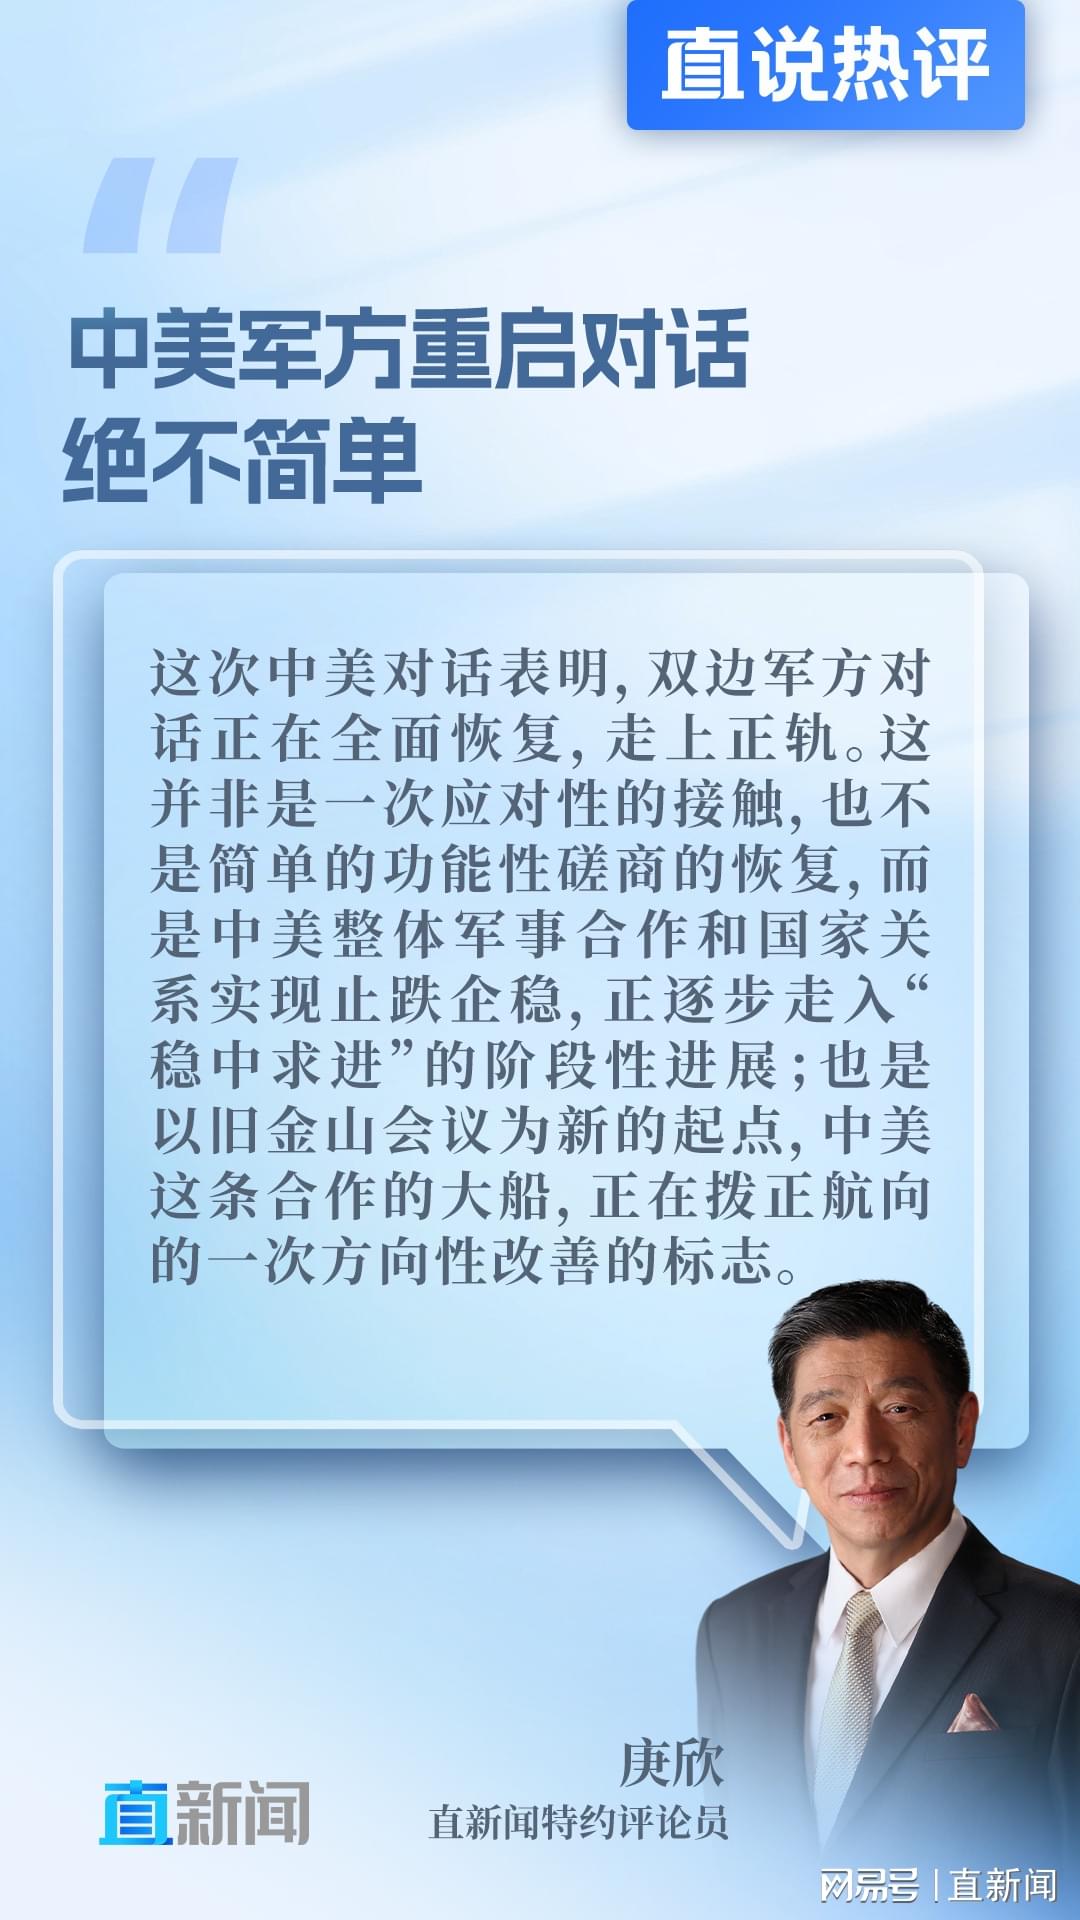 刘建超在美国对外关系委员会发表演讲